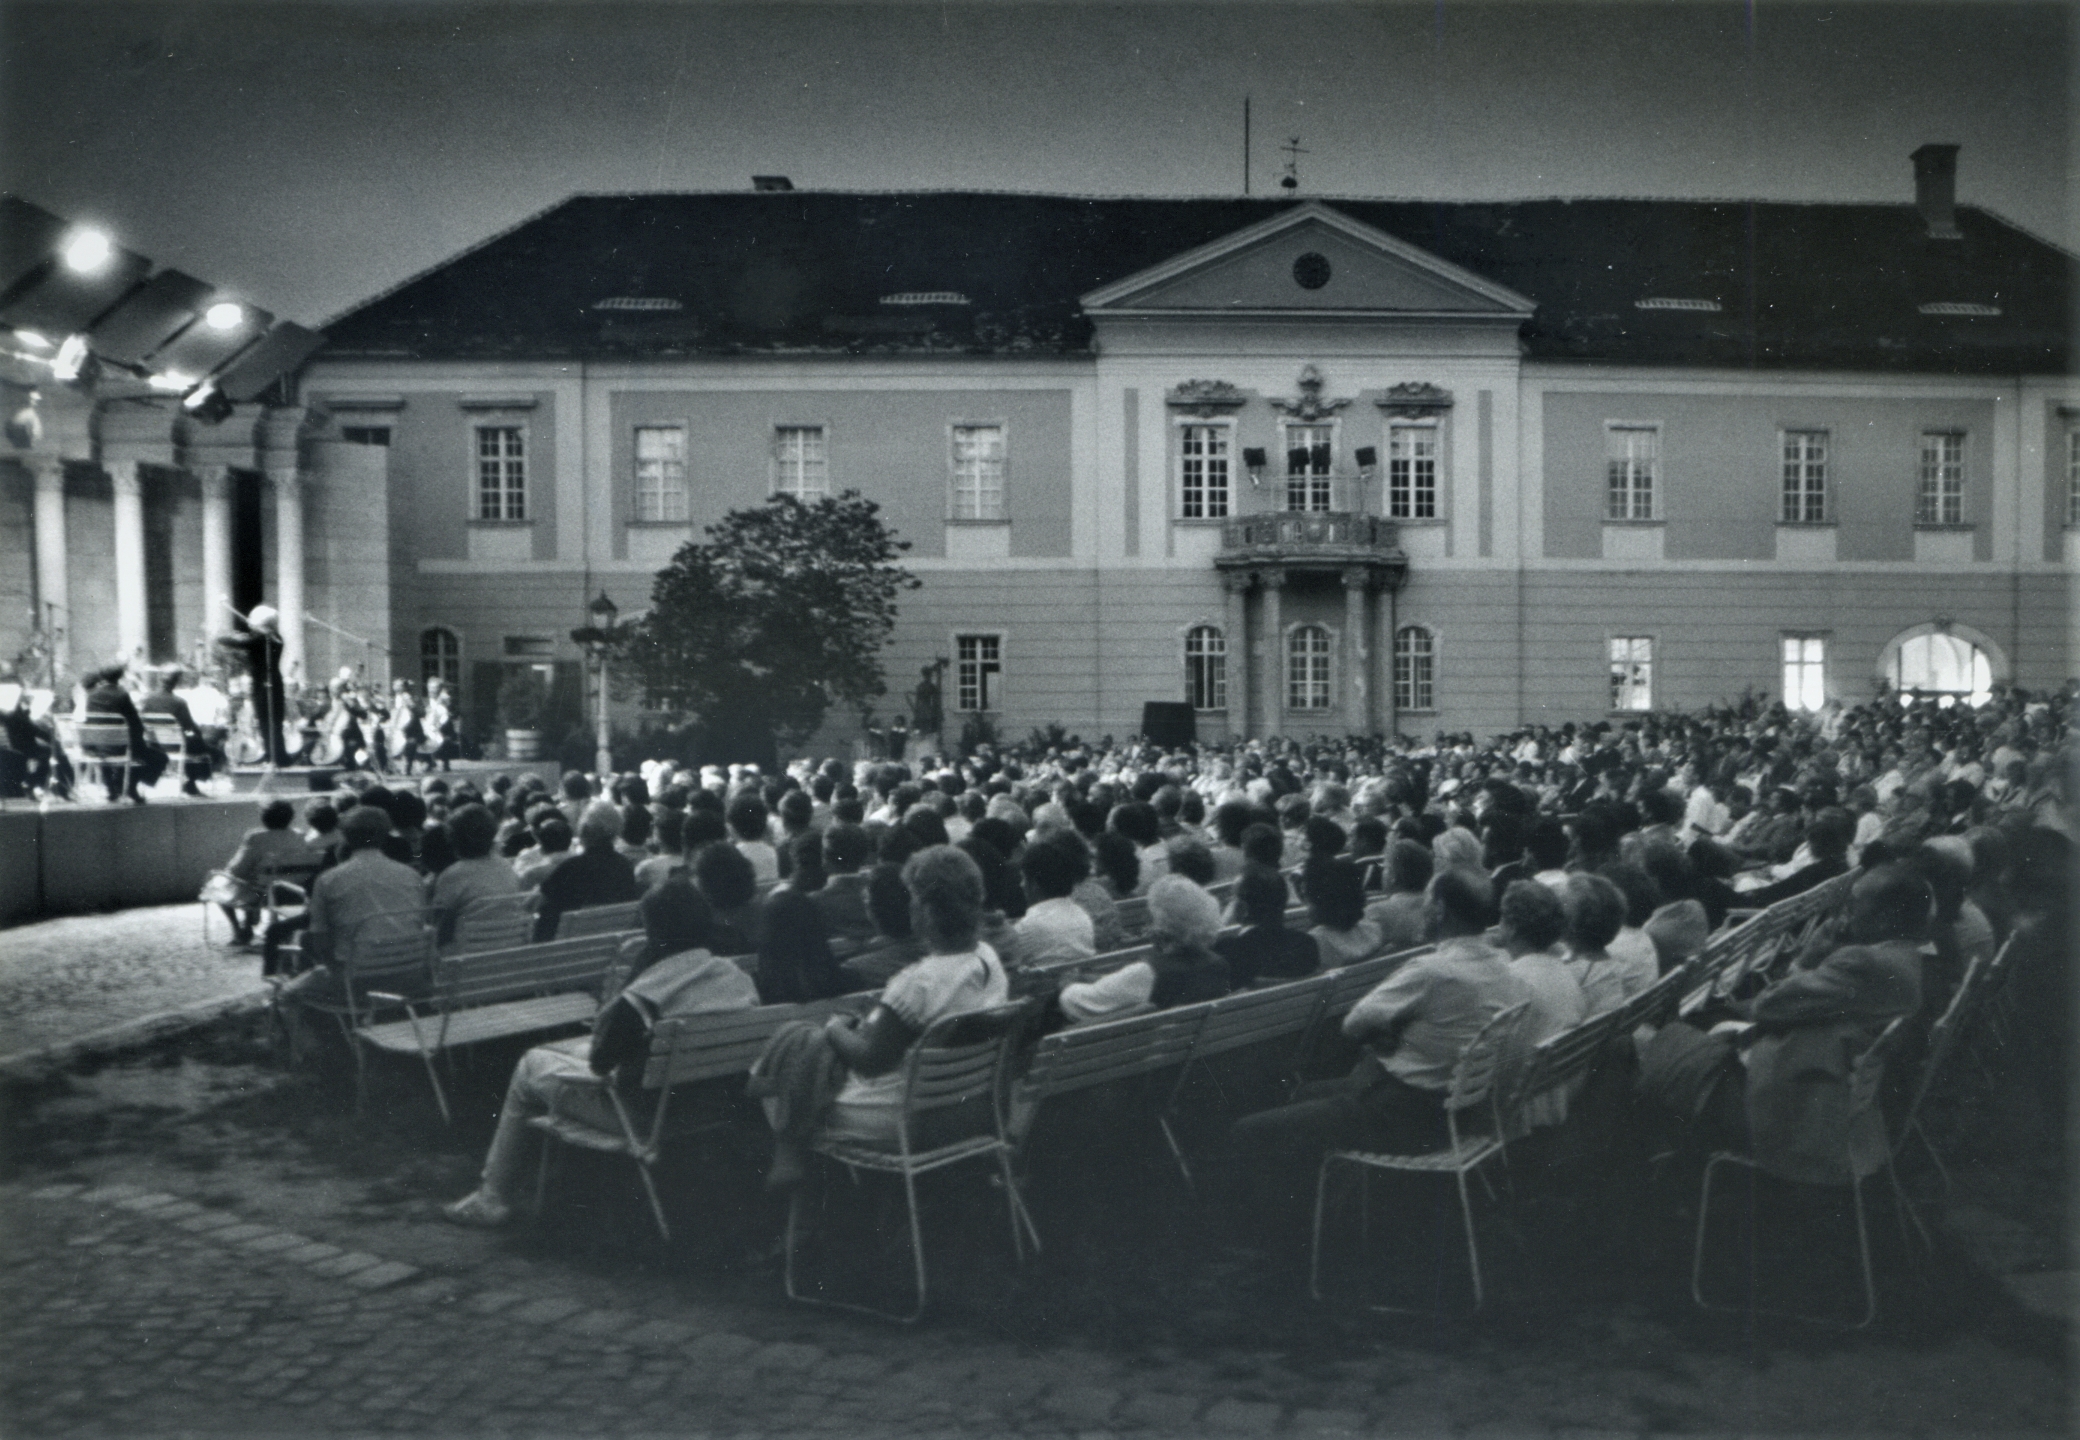 Koncert a Zichy-kastély udvarán, 1980 körül. Óbudai Múzeum, Fotótár, ltsz. 2010.1.125.